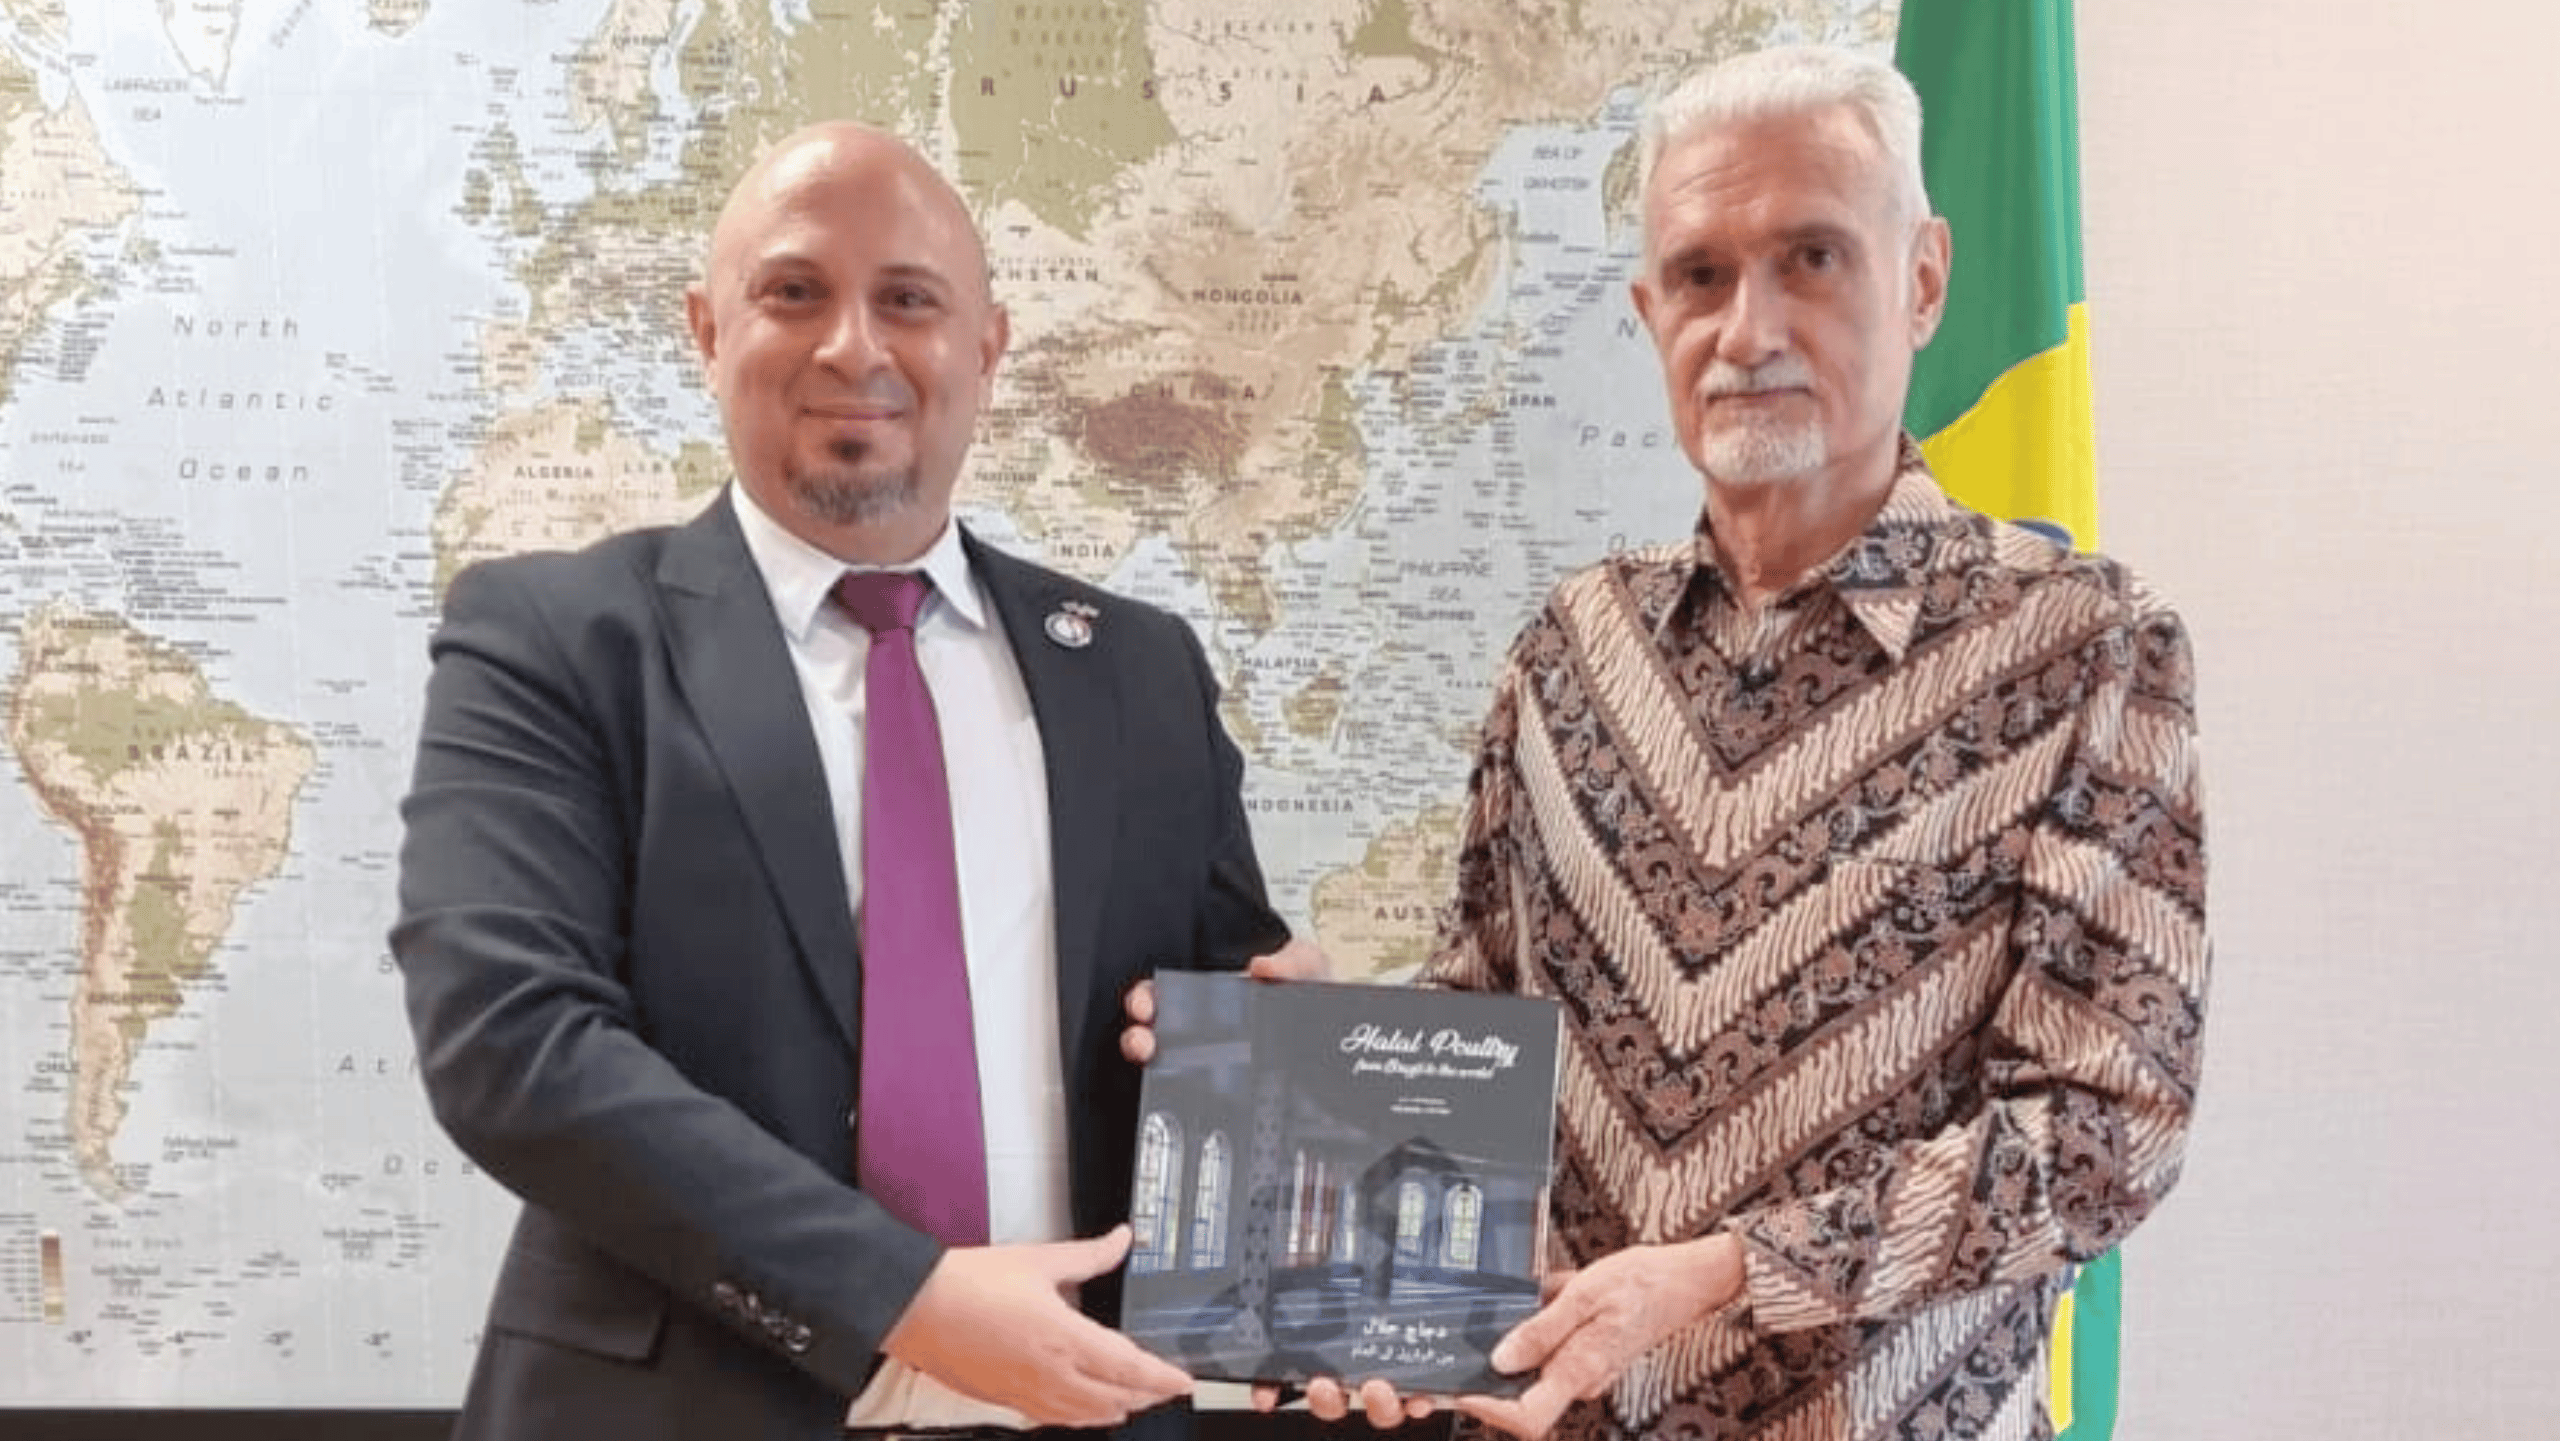 Registro da entrega do livro Halal Poultry ao embaixador do Brasil na Indonésia.